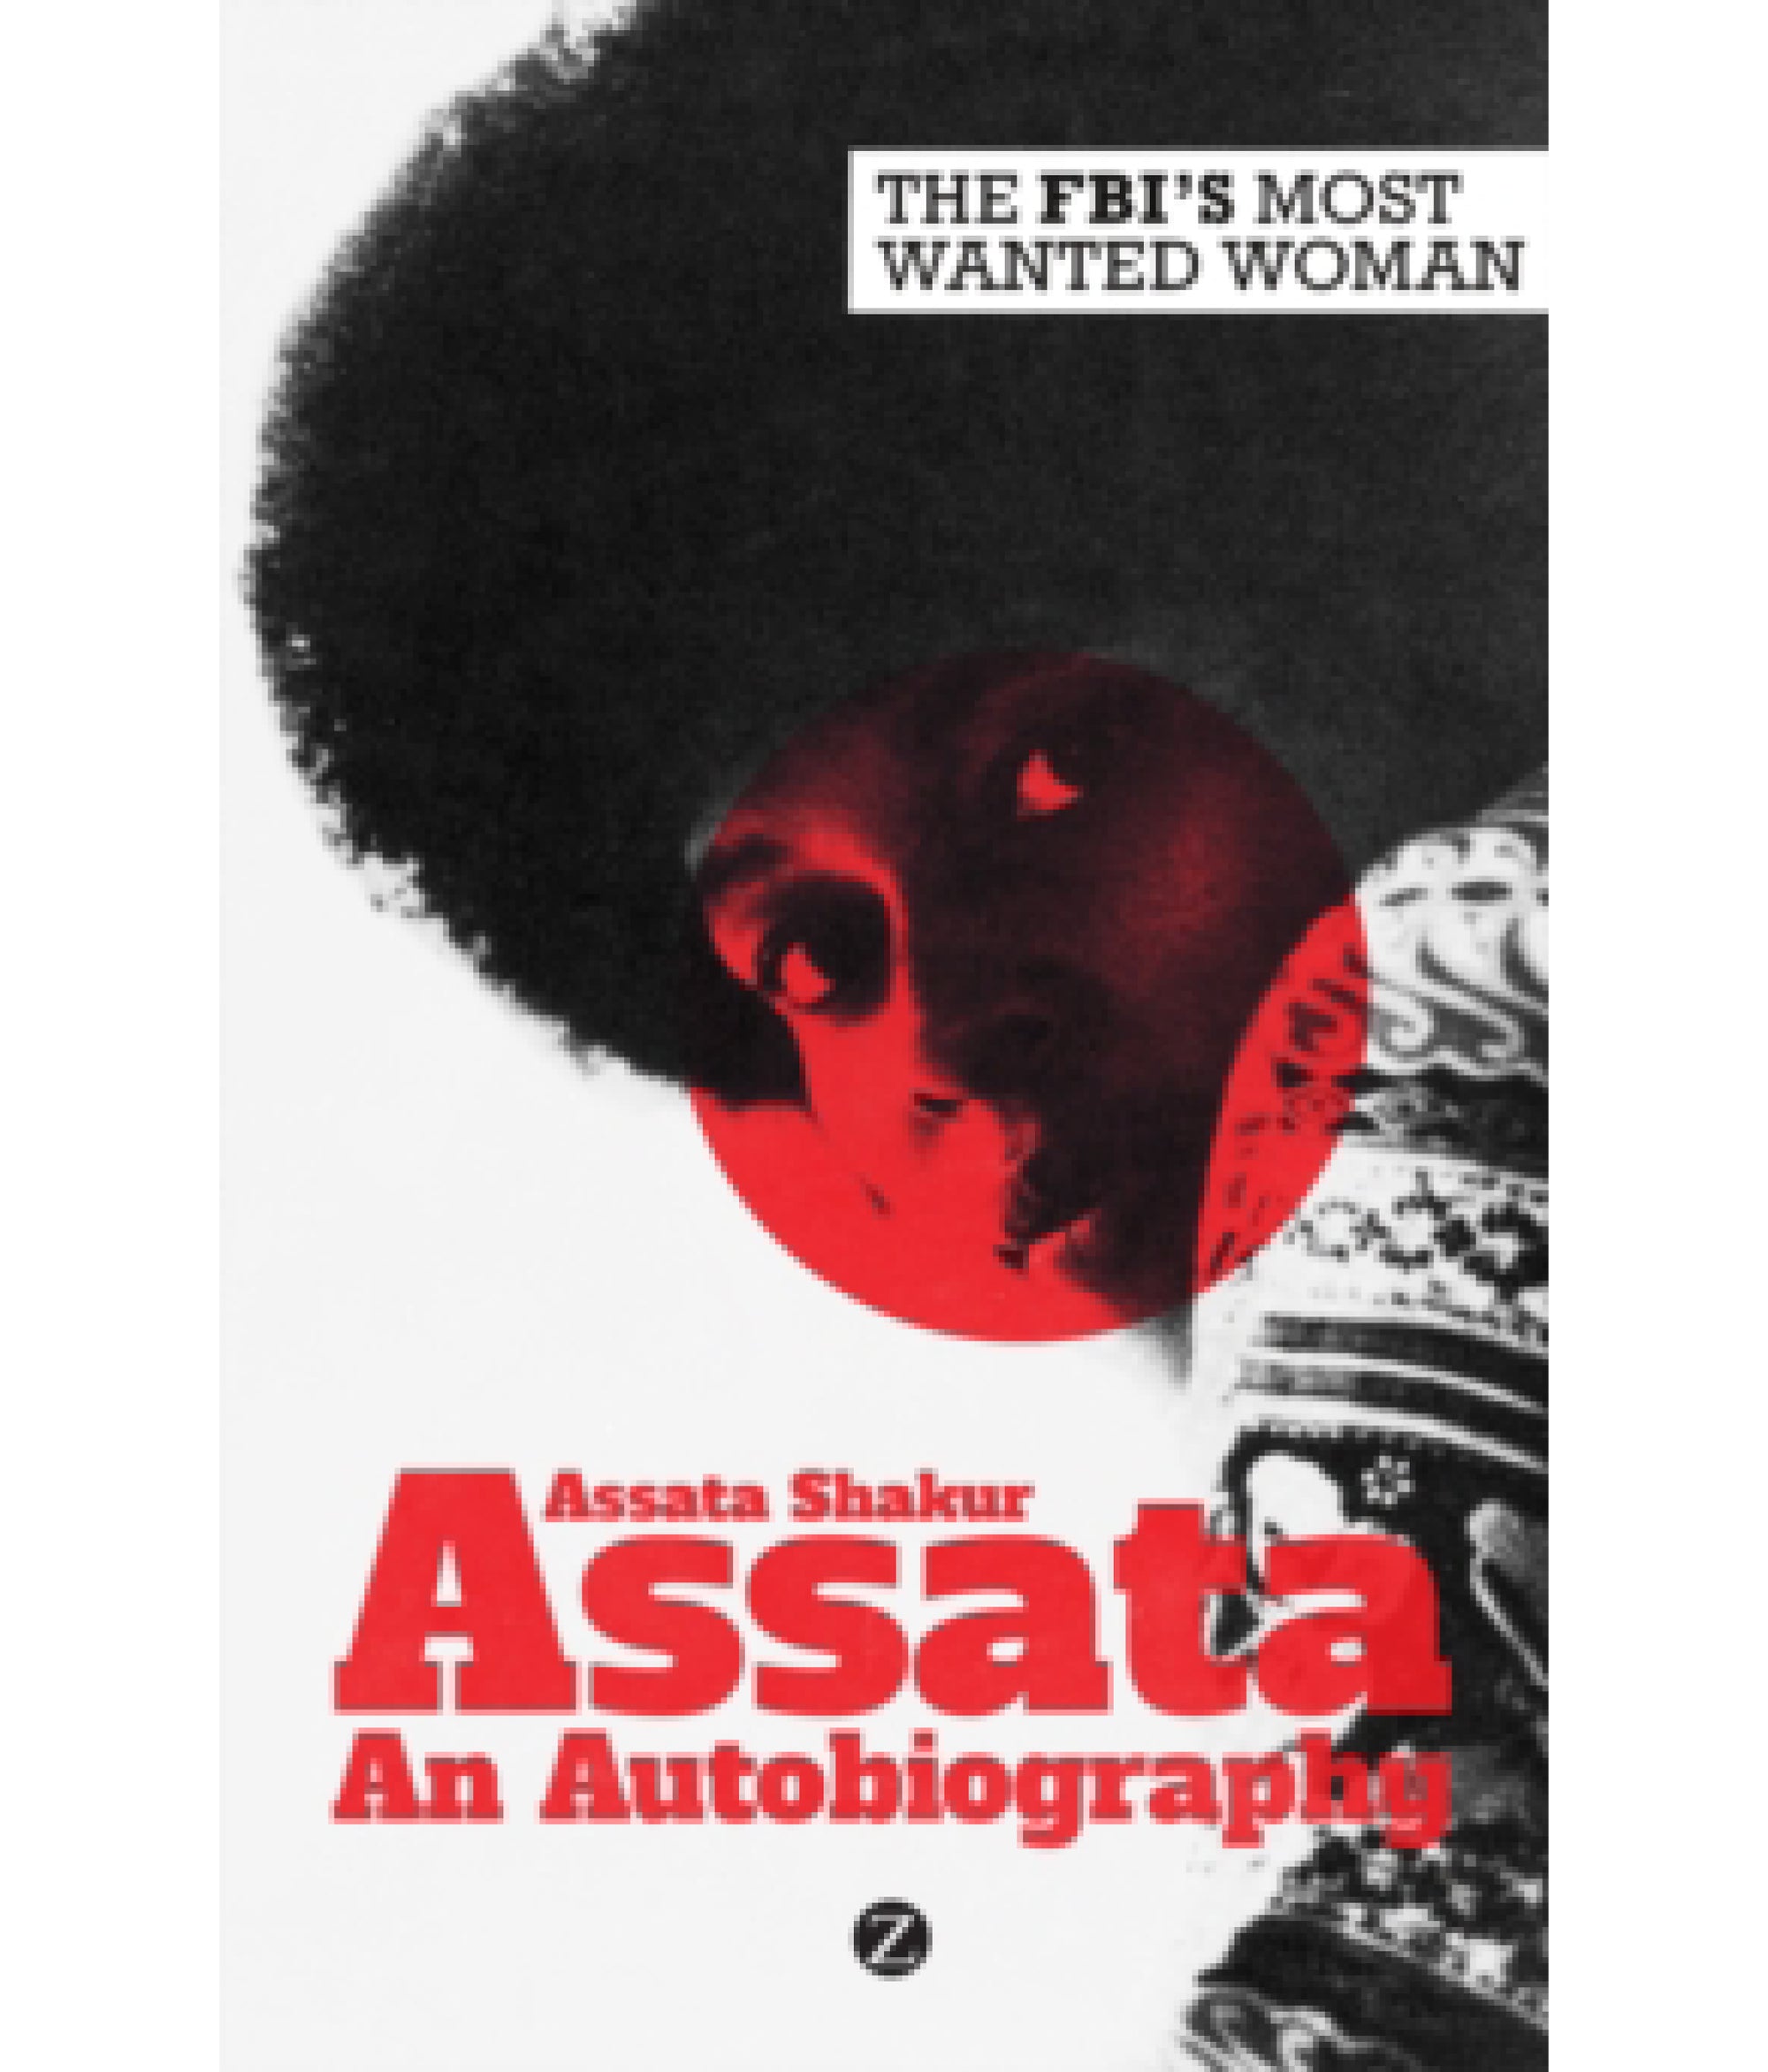 Assata: An Autobiography by Assata Sakur